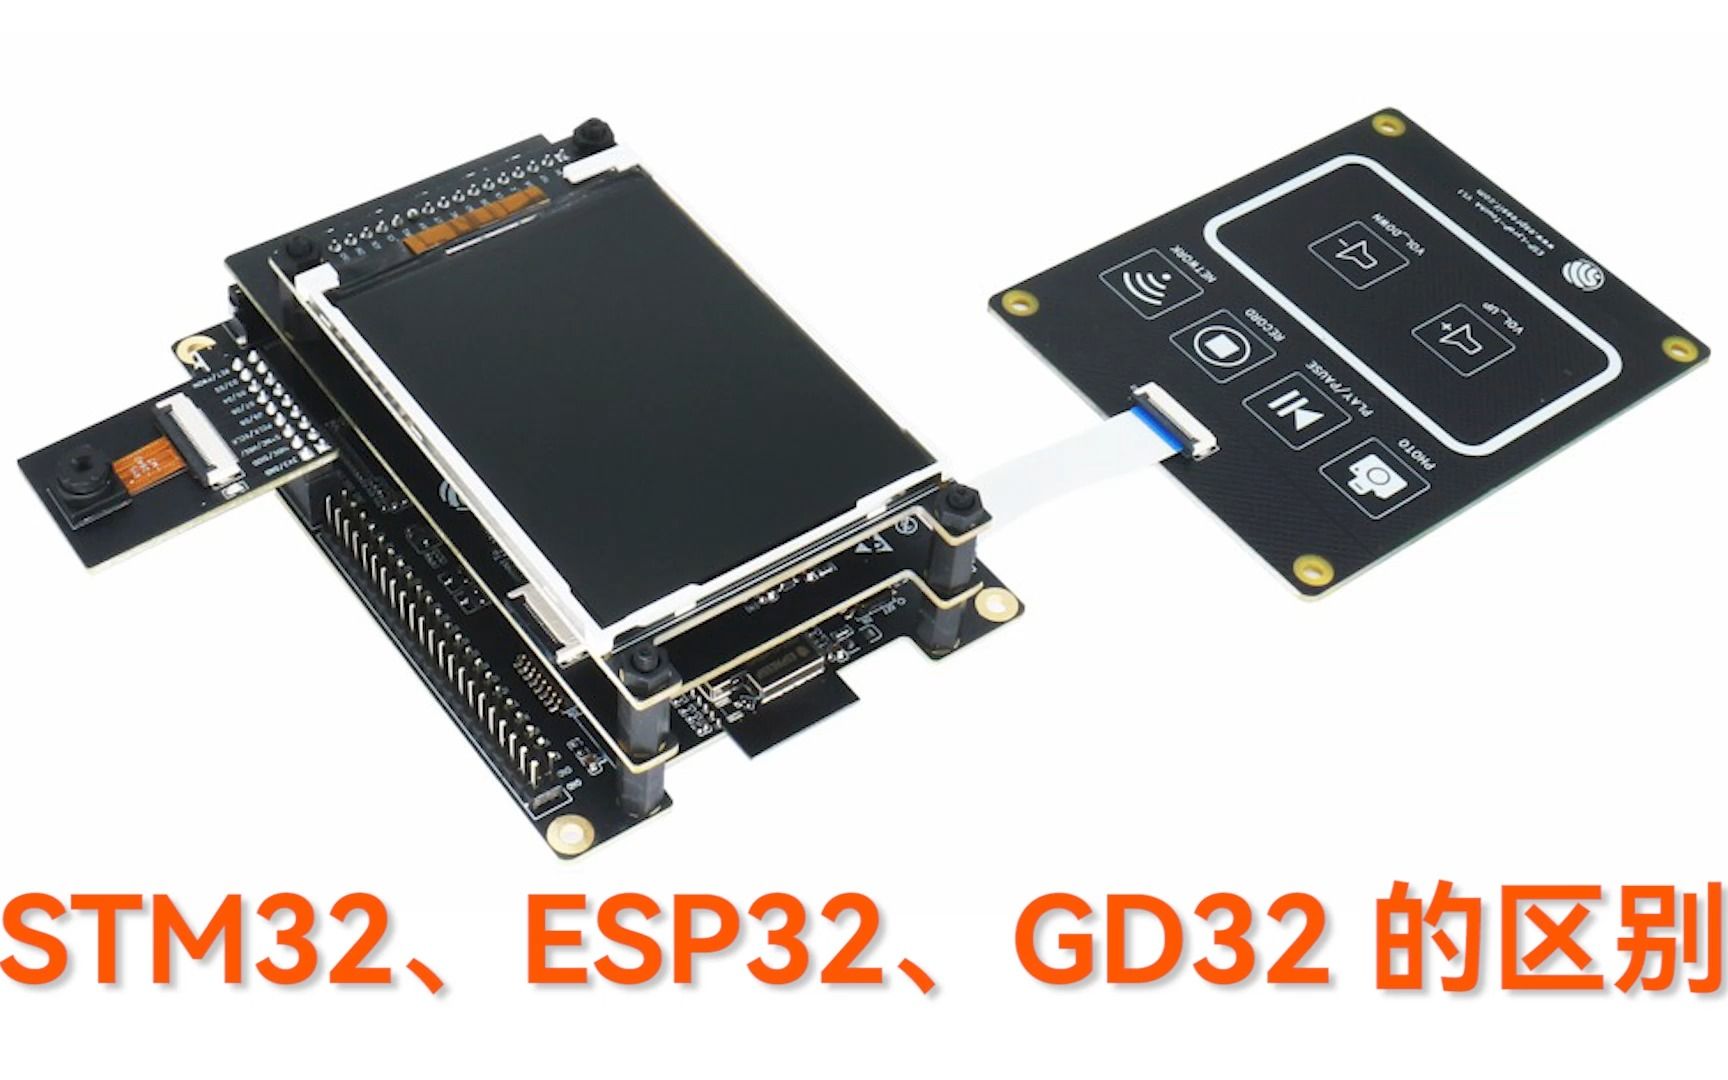 STM32、ESP32、GD32 有何区别，该怎么选择？